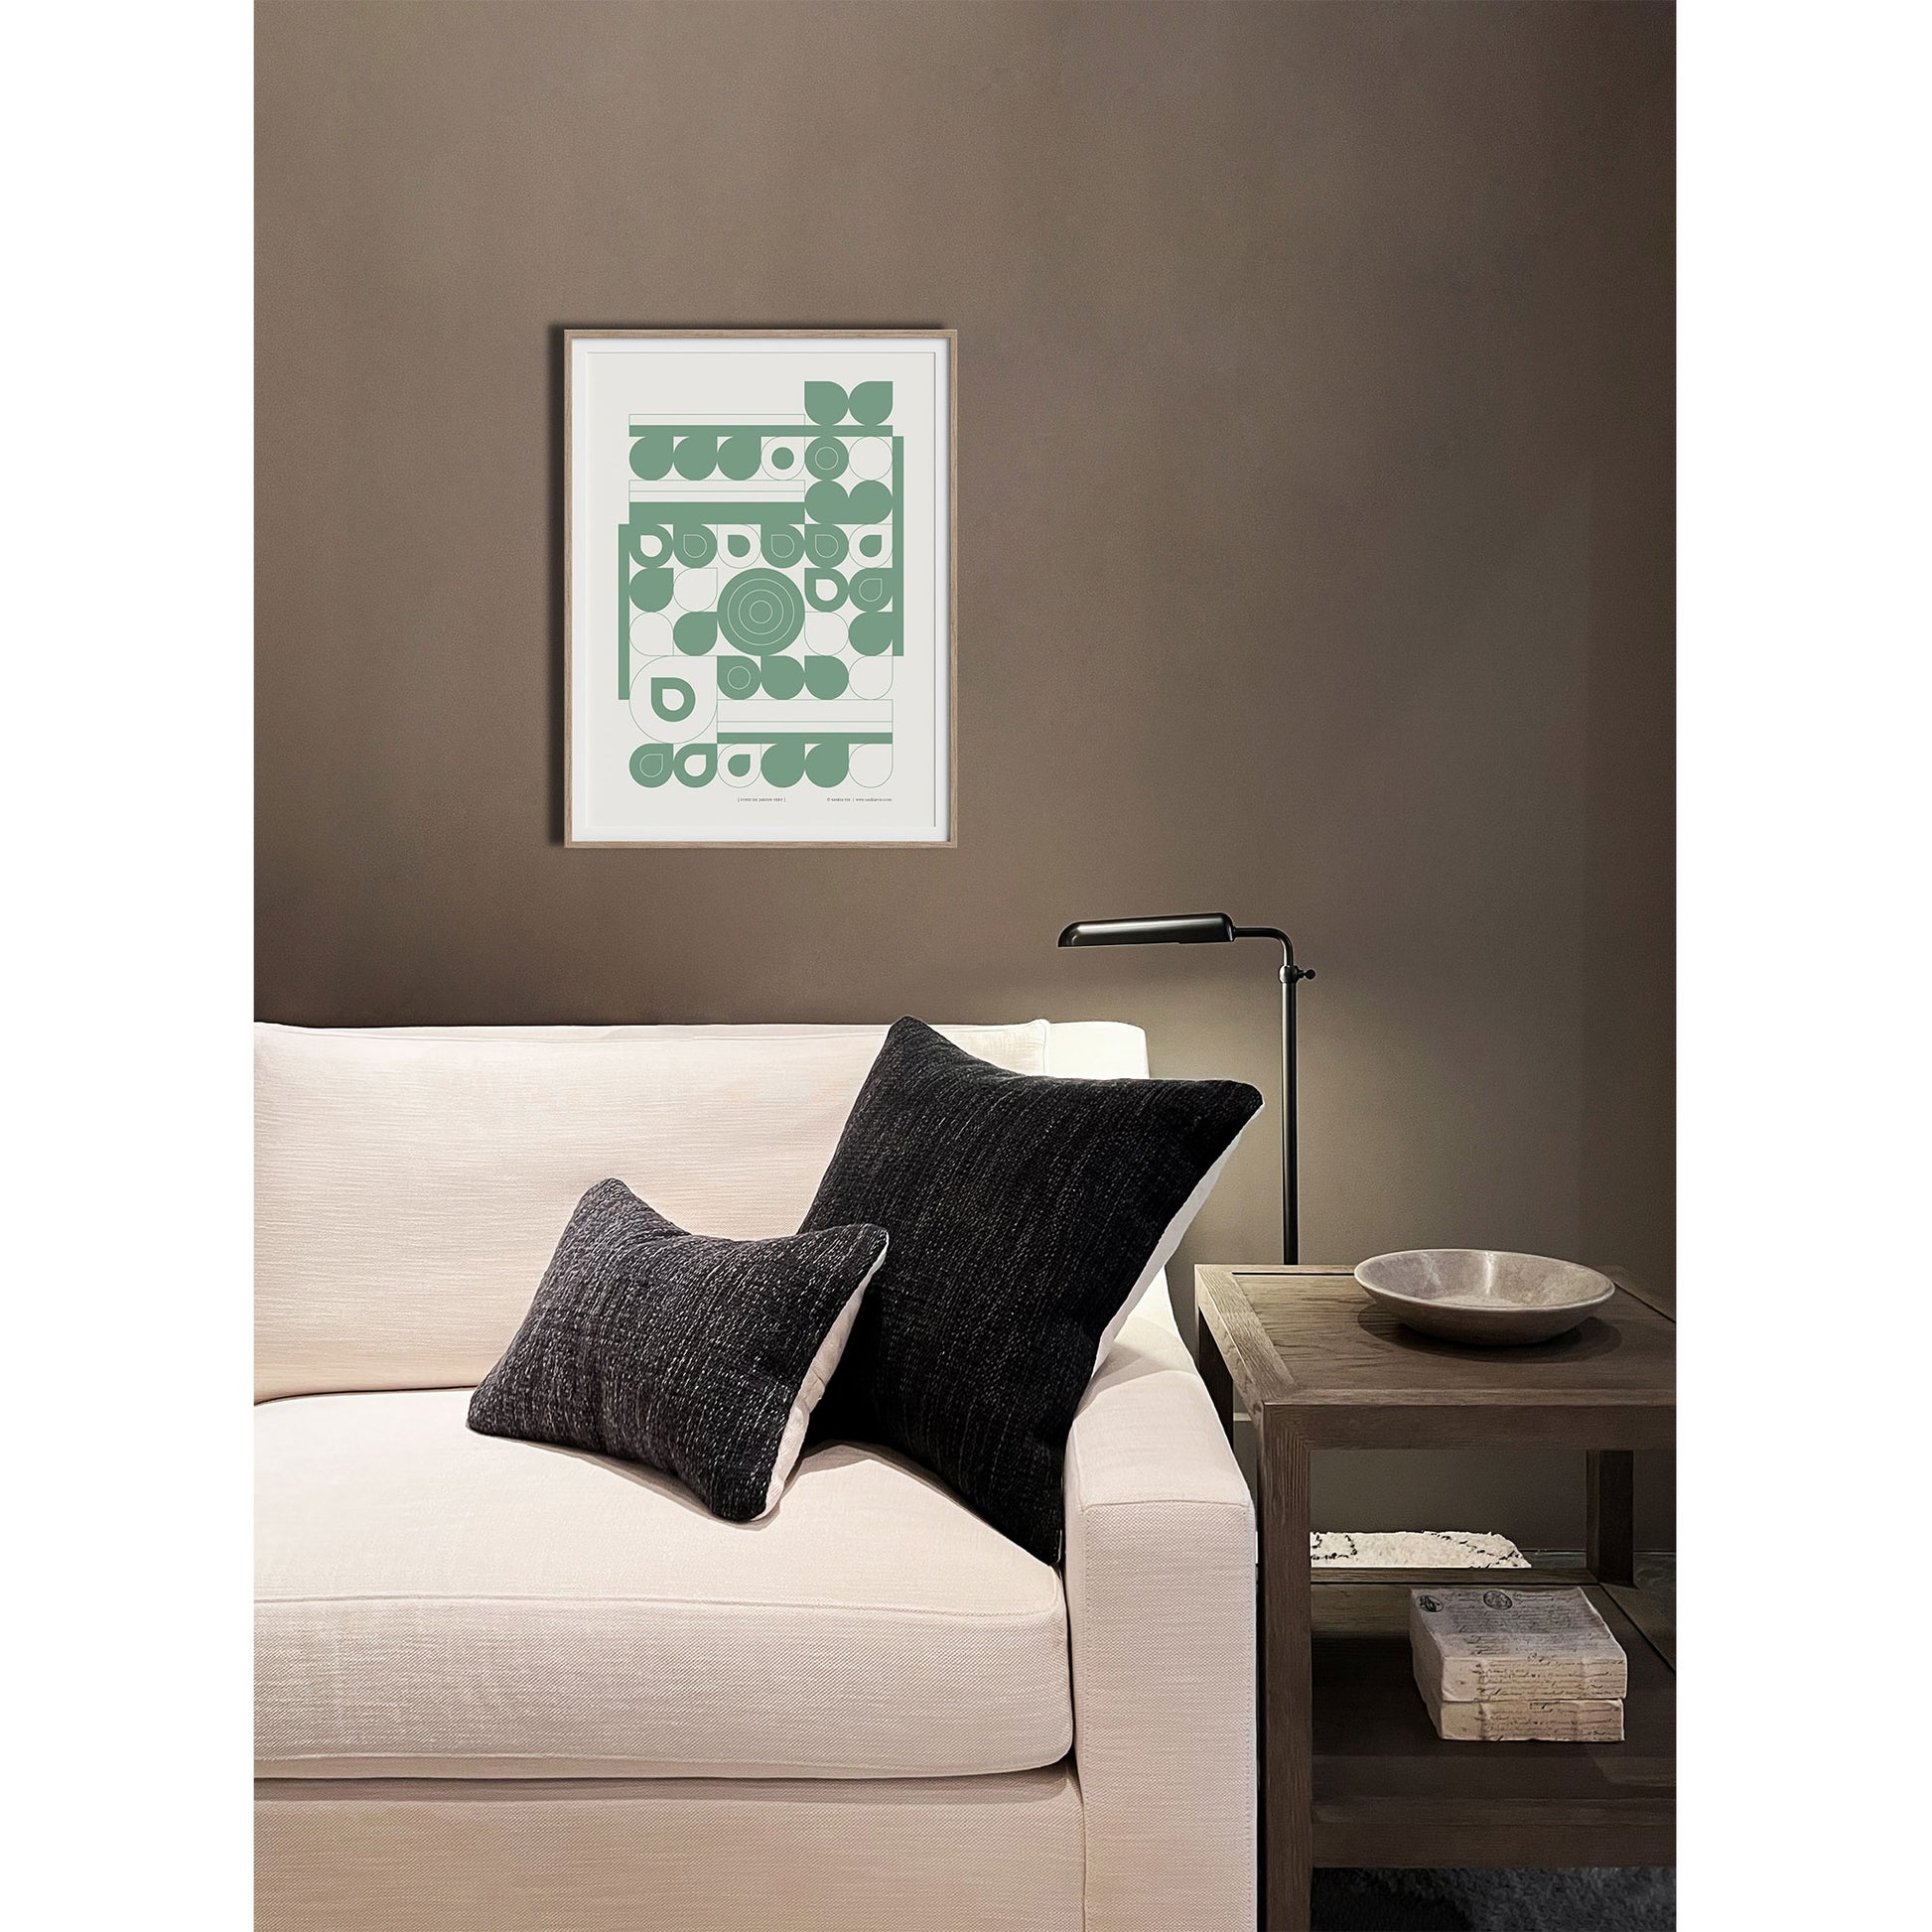 Productafbeelding poster "fond de jardin vert" 4de impressie foto, ingelijst, hangend boven een bank in een interieur met een klein tafeltje.